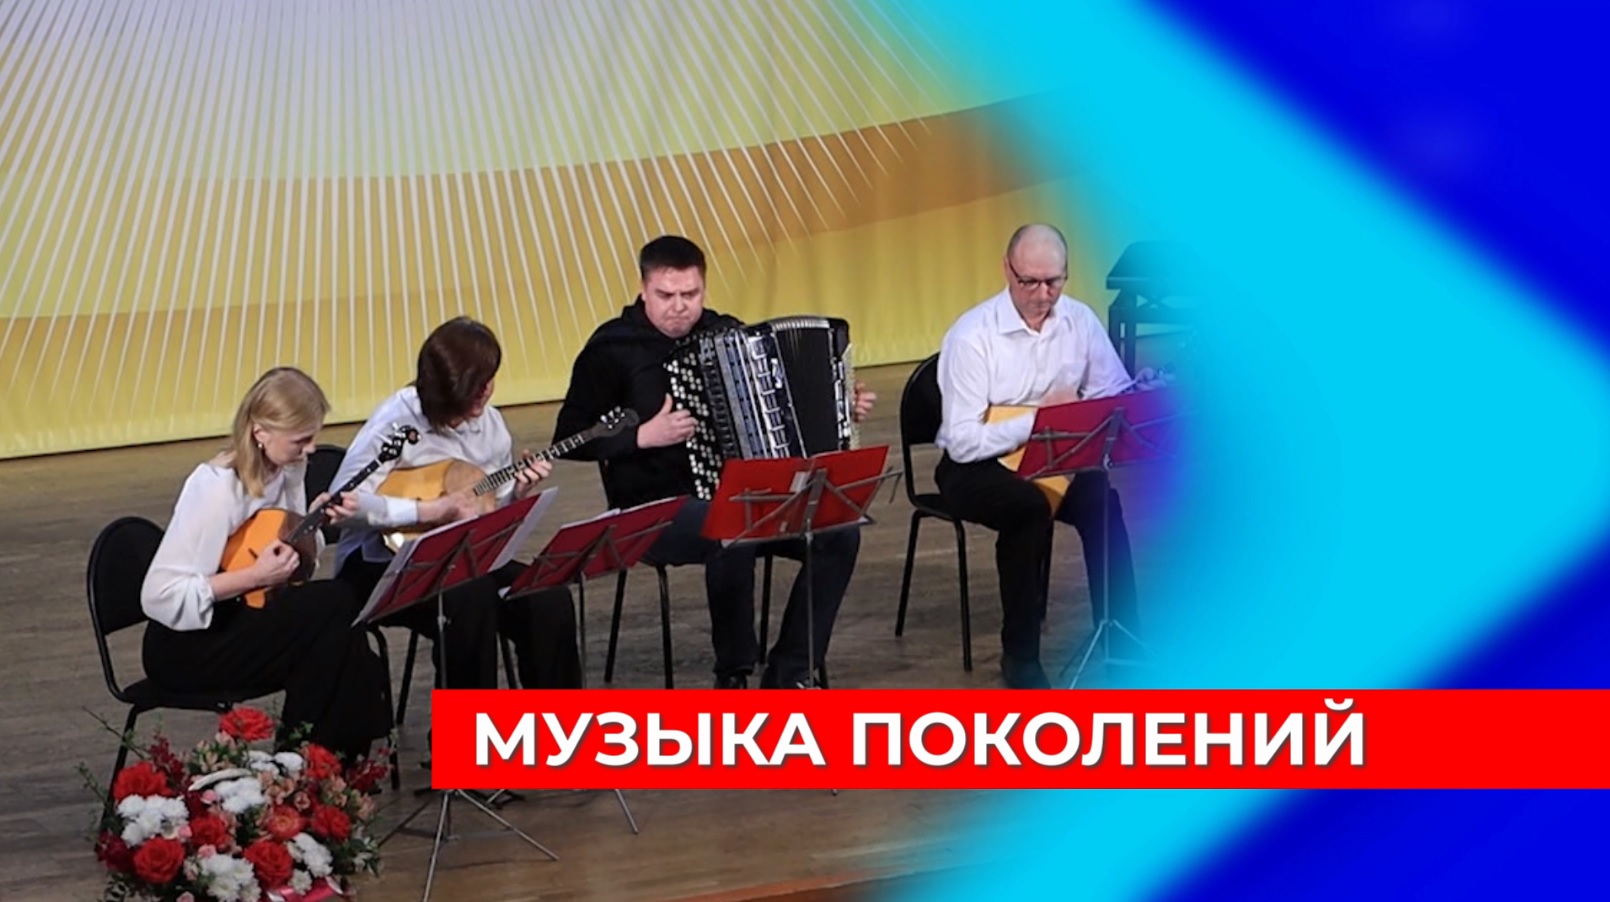 Юные музыканты и художники со всей страны приняли участие в фестивале искусств в Нижнем Новгороде